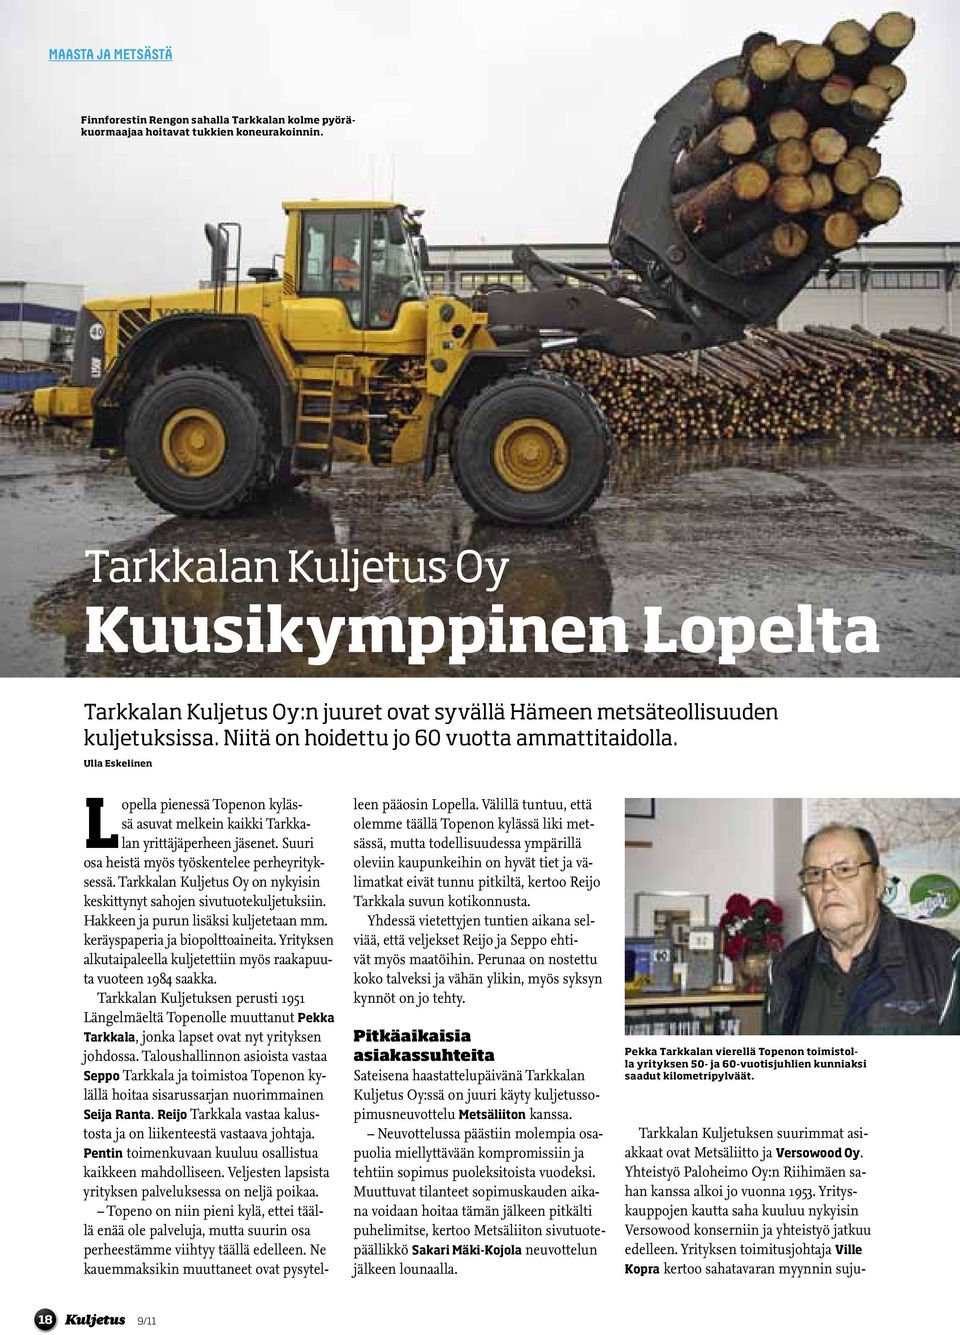 Ulla Eskelinen Lopella pienessä Topenon kylässä asuvat melkein kaikki Tarkkalan yrittäjäperheen jäsenet. Suuri osa heistä myös työskentelee perheyrityksessä.